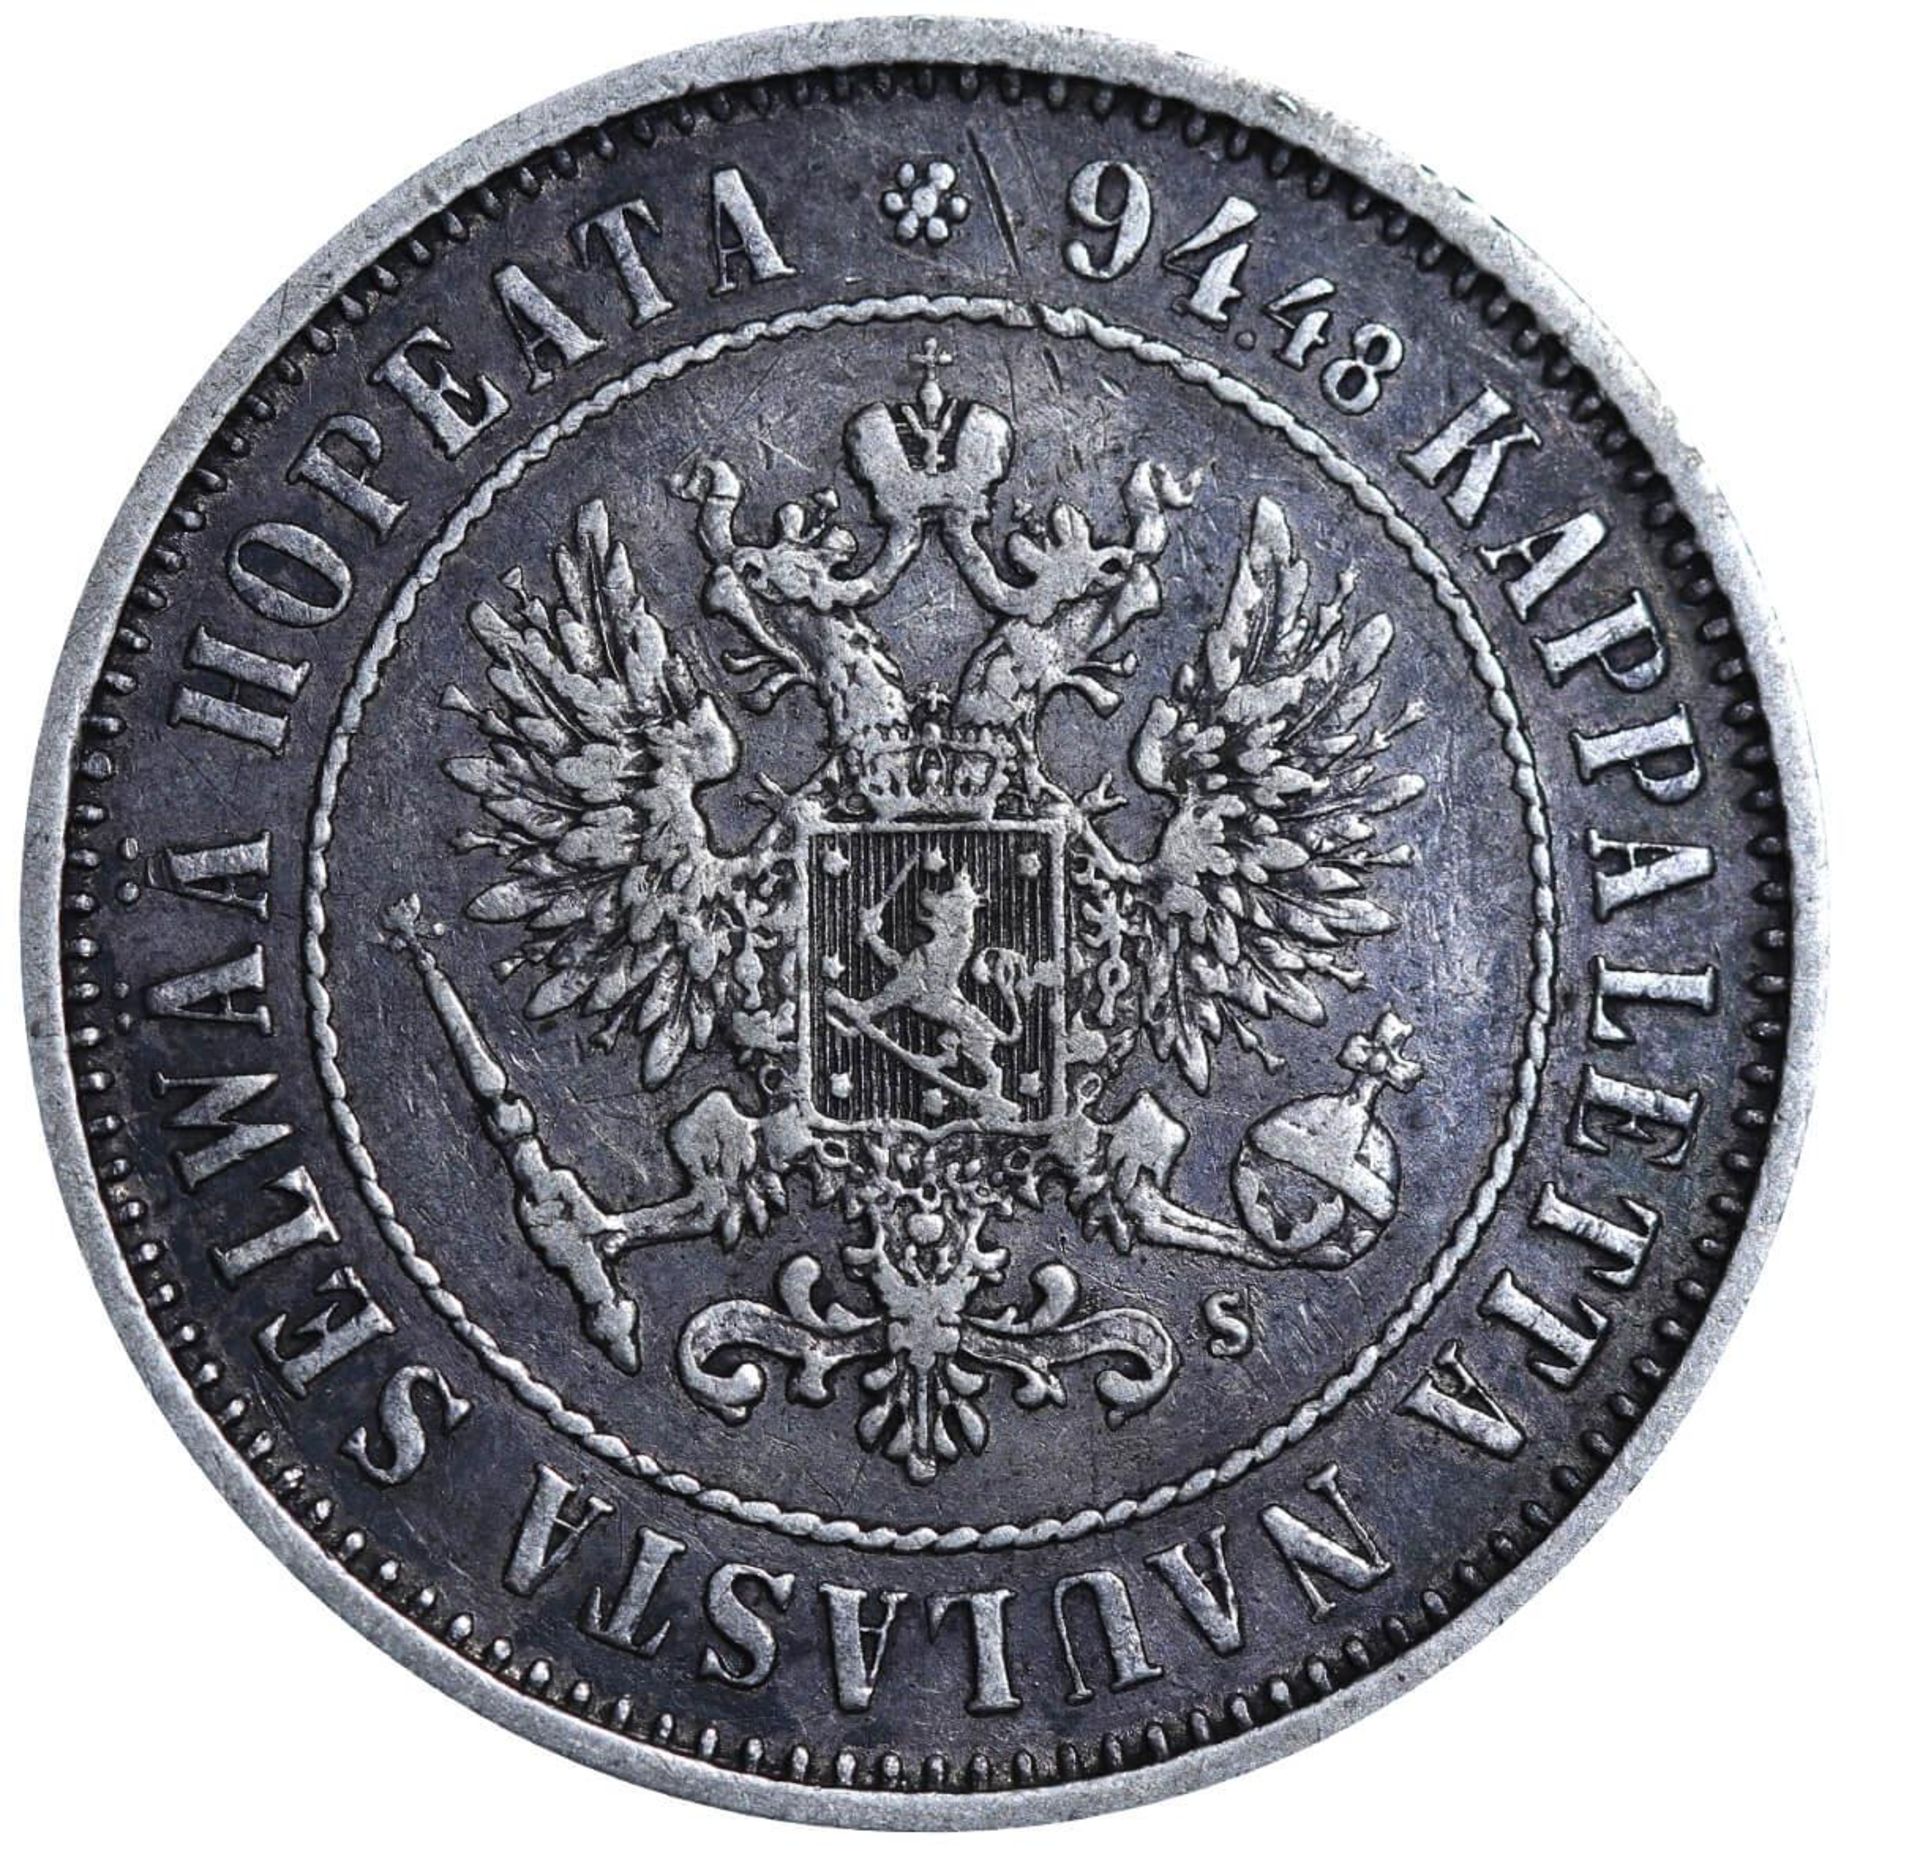 Russian Empire, 1 Markka, 1874 year, S - Image 3 of 3